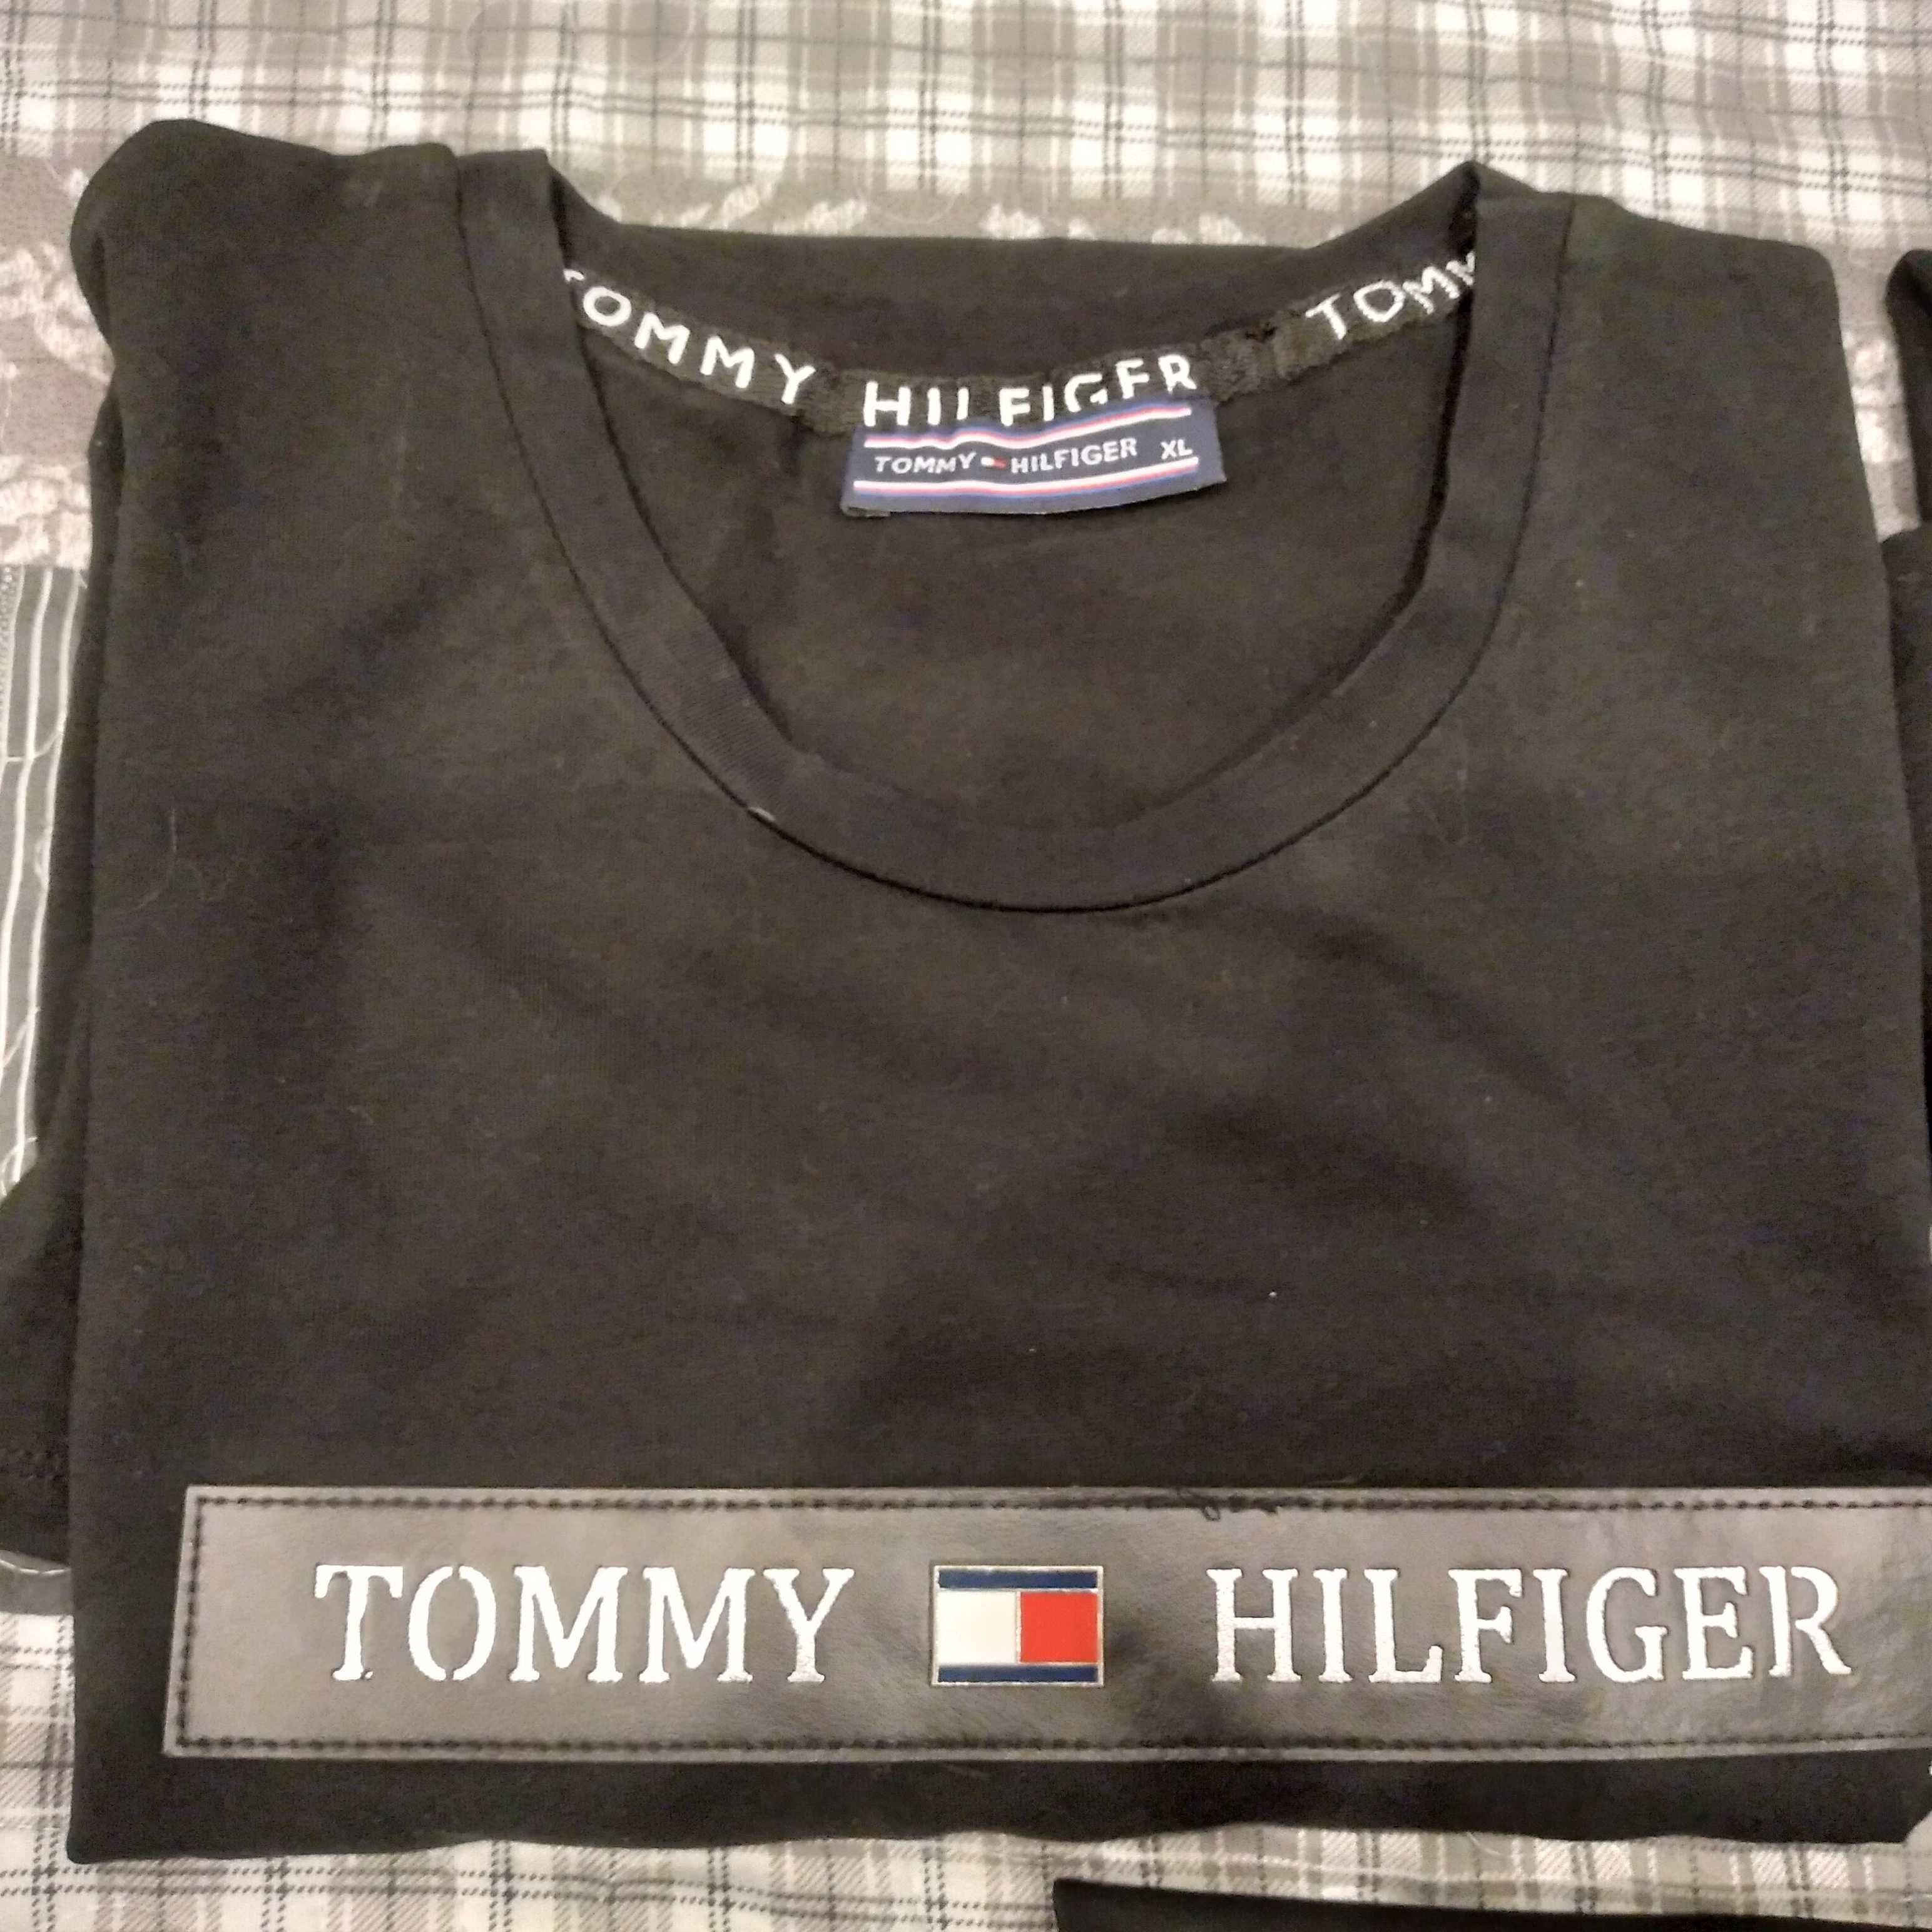 Nike, Tommy Hilfiger , Emporio Armani koszulki nowe zestaw 3szt